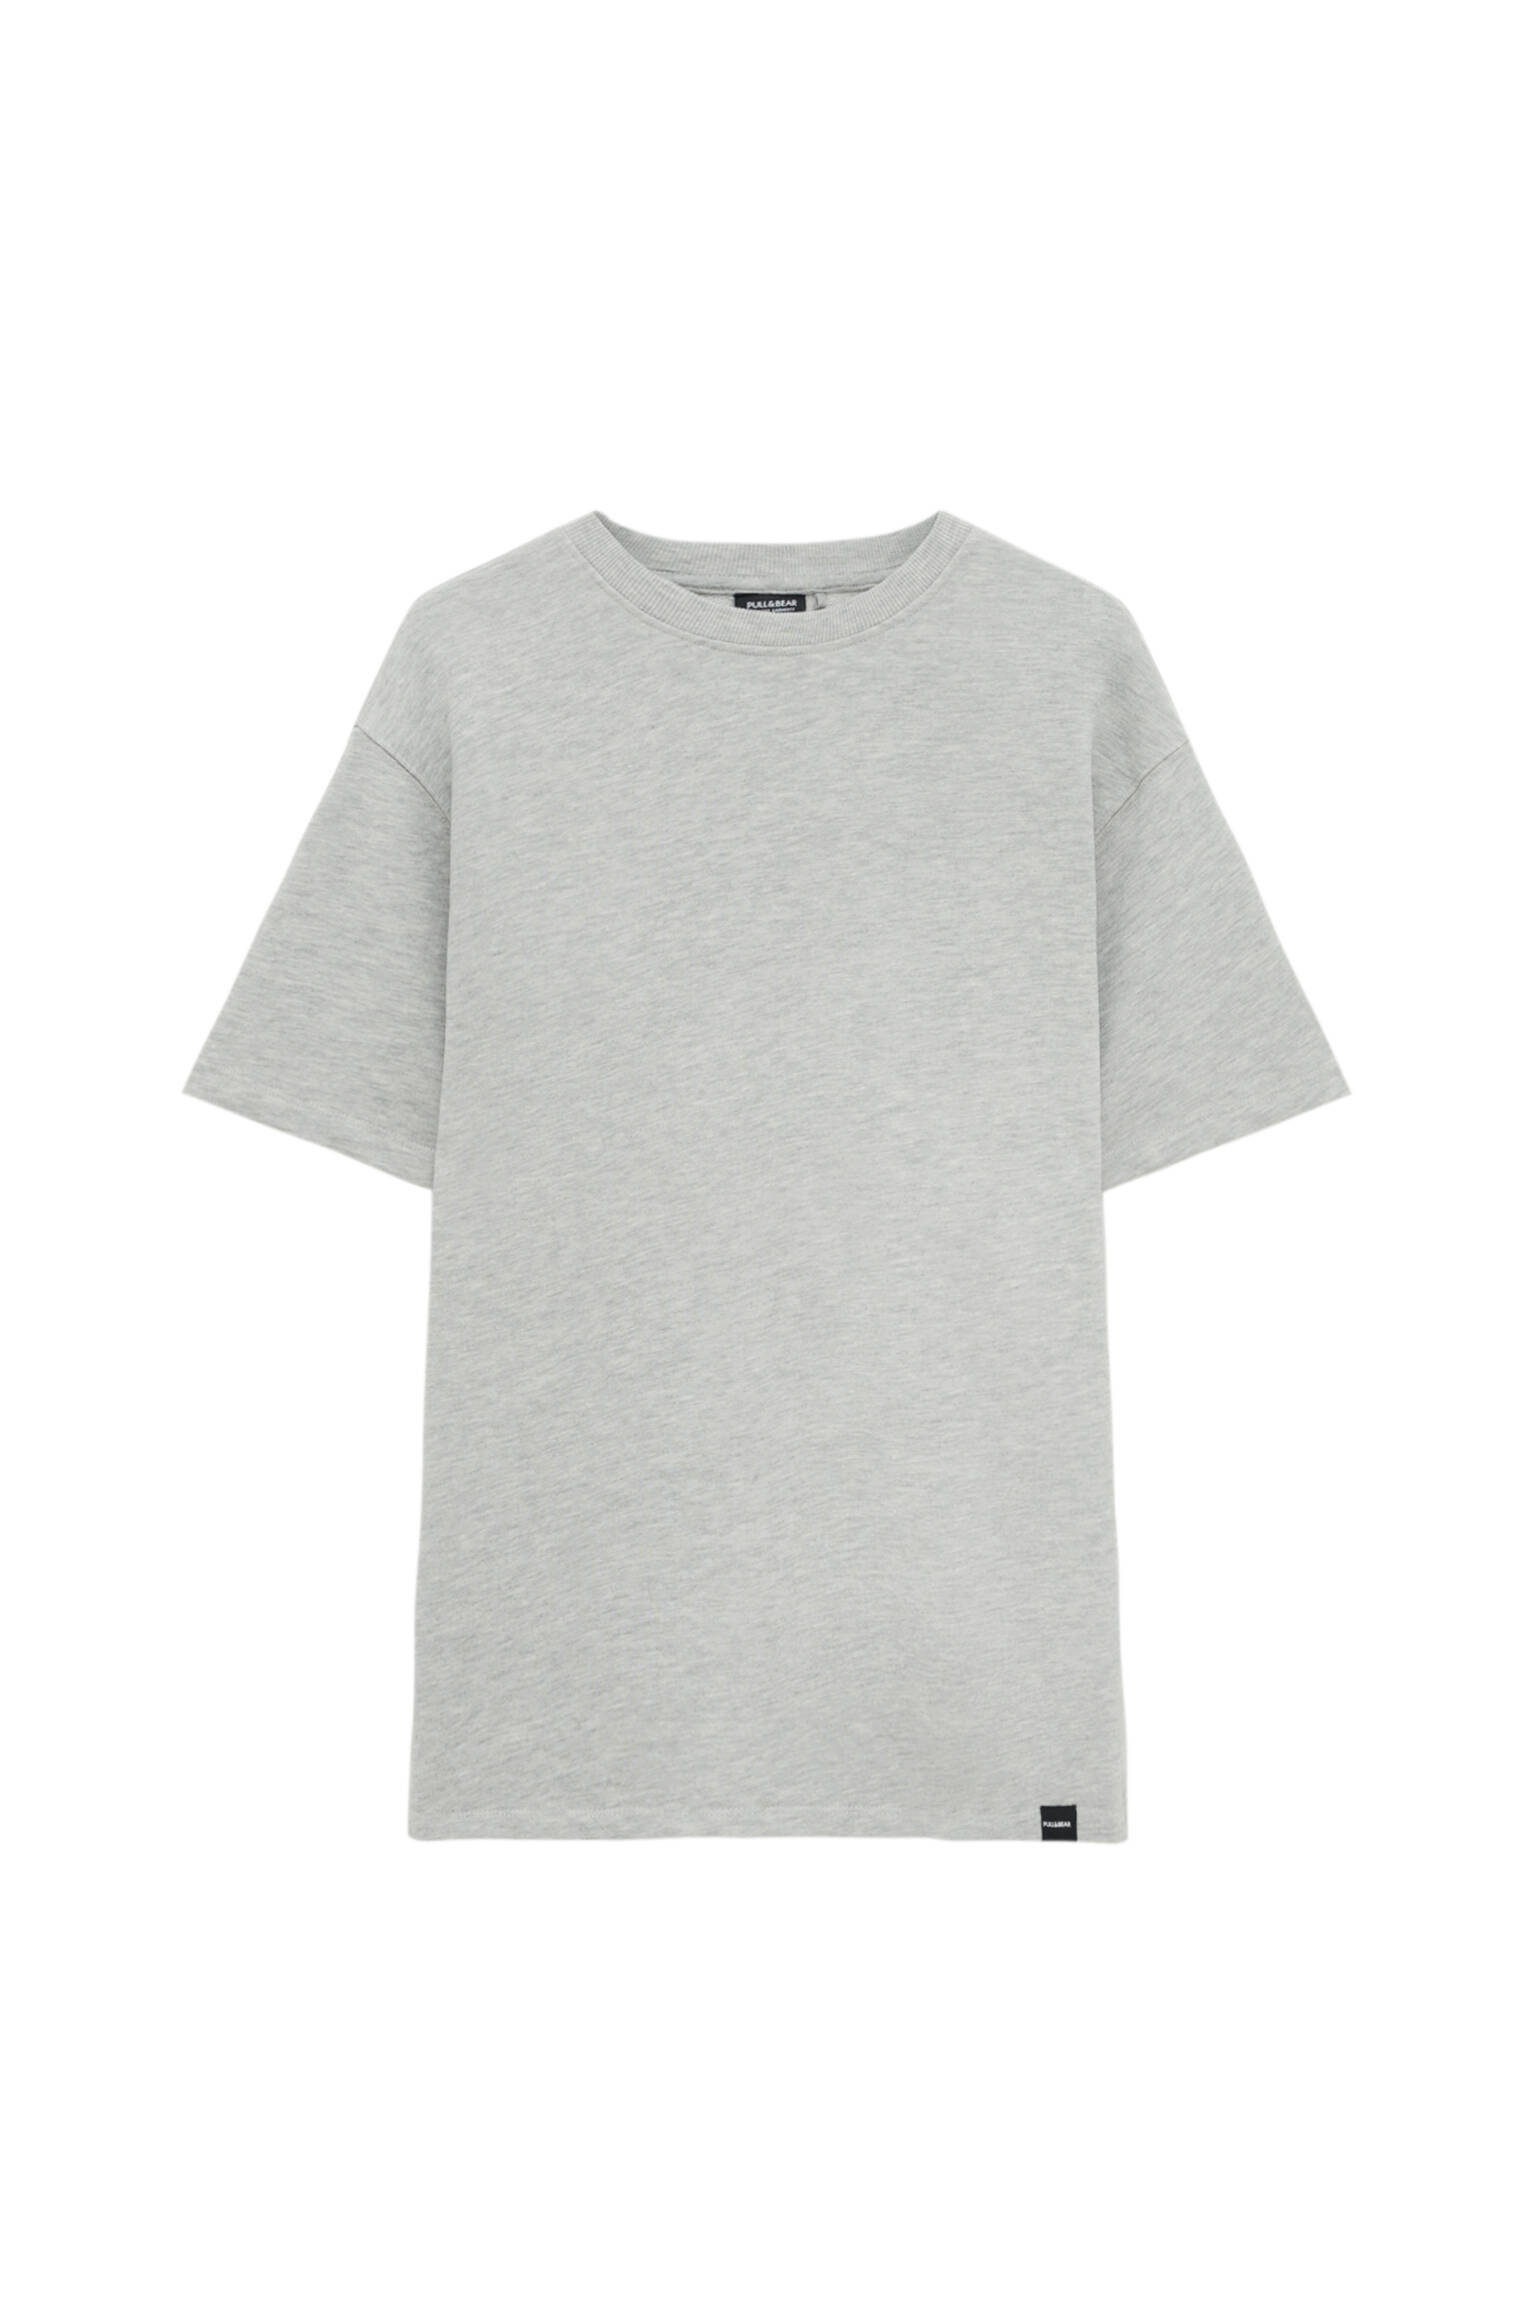 Pull&bear Homme T-shirt Basique En Coton Premium, à Manches Courtes Et Col Rond, Disponible En Plusieurs Couleurs. Gris Moyen Xl